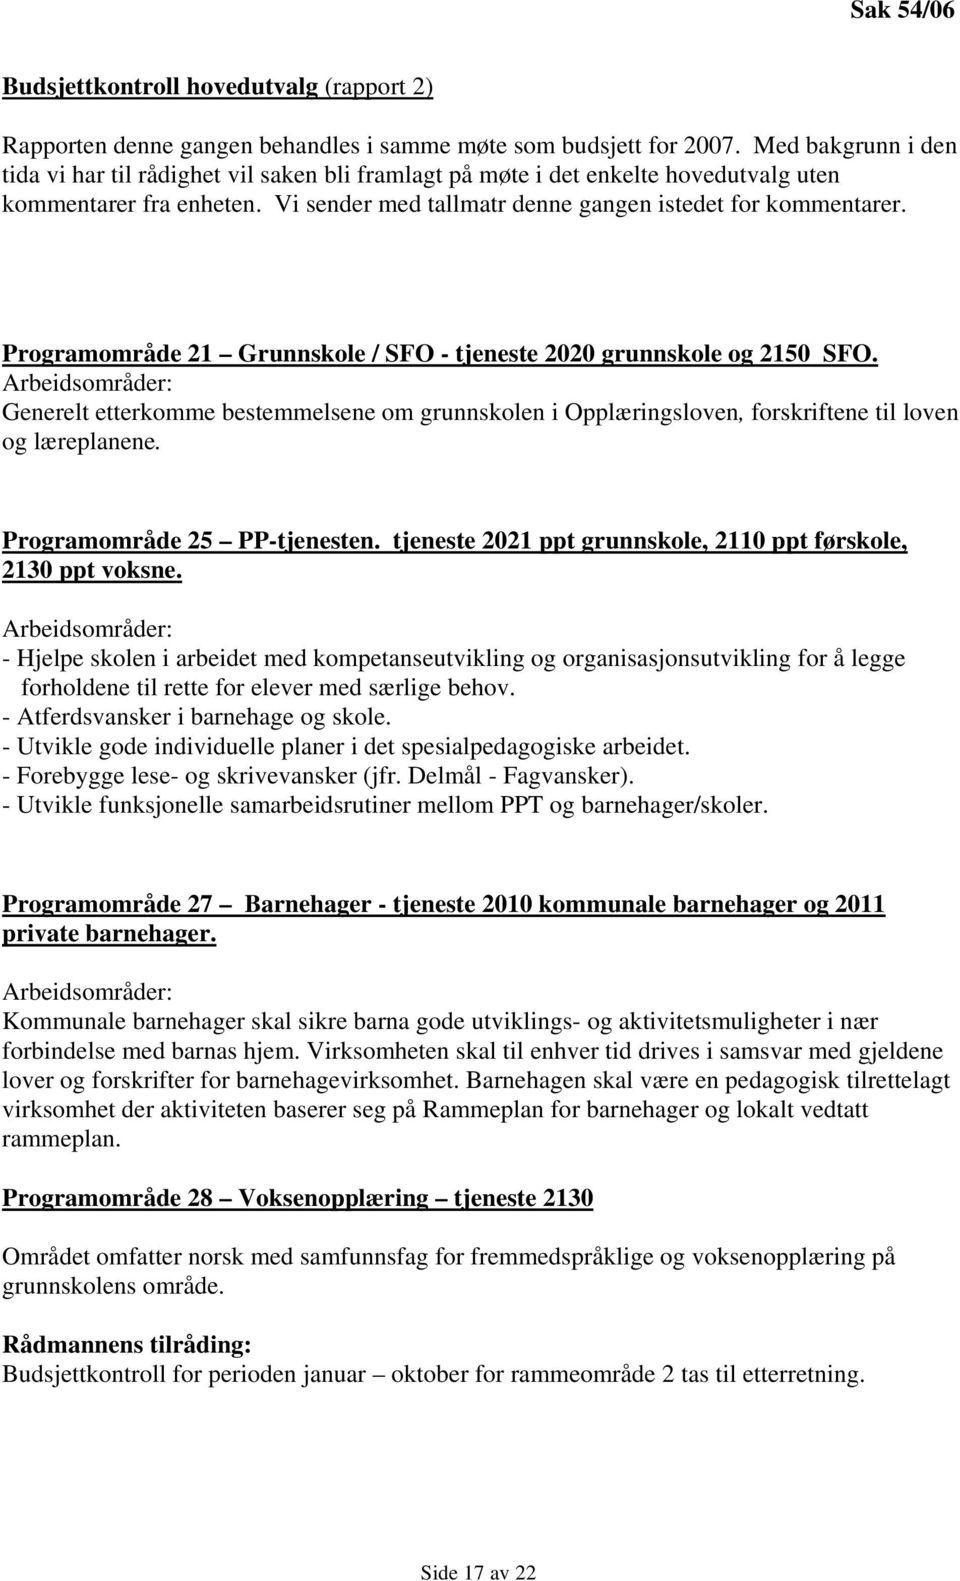 Programområde 21 Grunnskole / SFO - tjeneste 2020 grunnskole og 2150 SFO. Arbeidsområder: Generelt etterkomme bestemmelsene om grunnskolen i Opplæringsloven, forskriftene til loven og læreplanene.